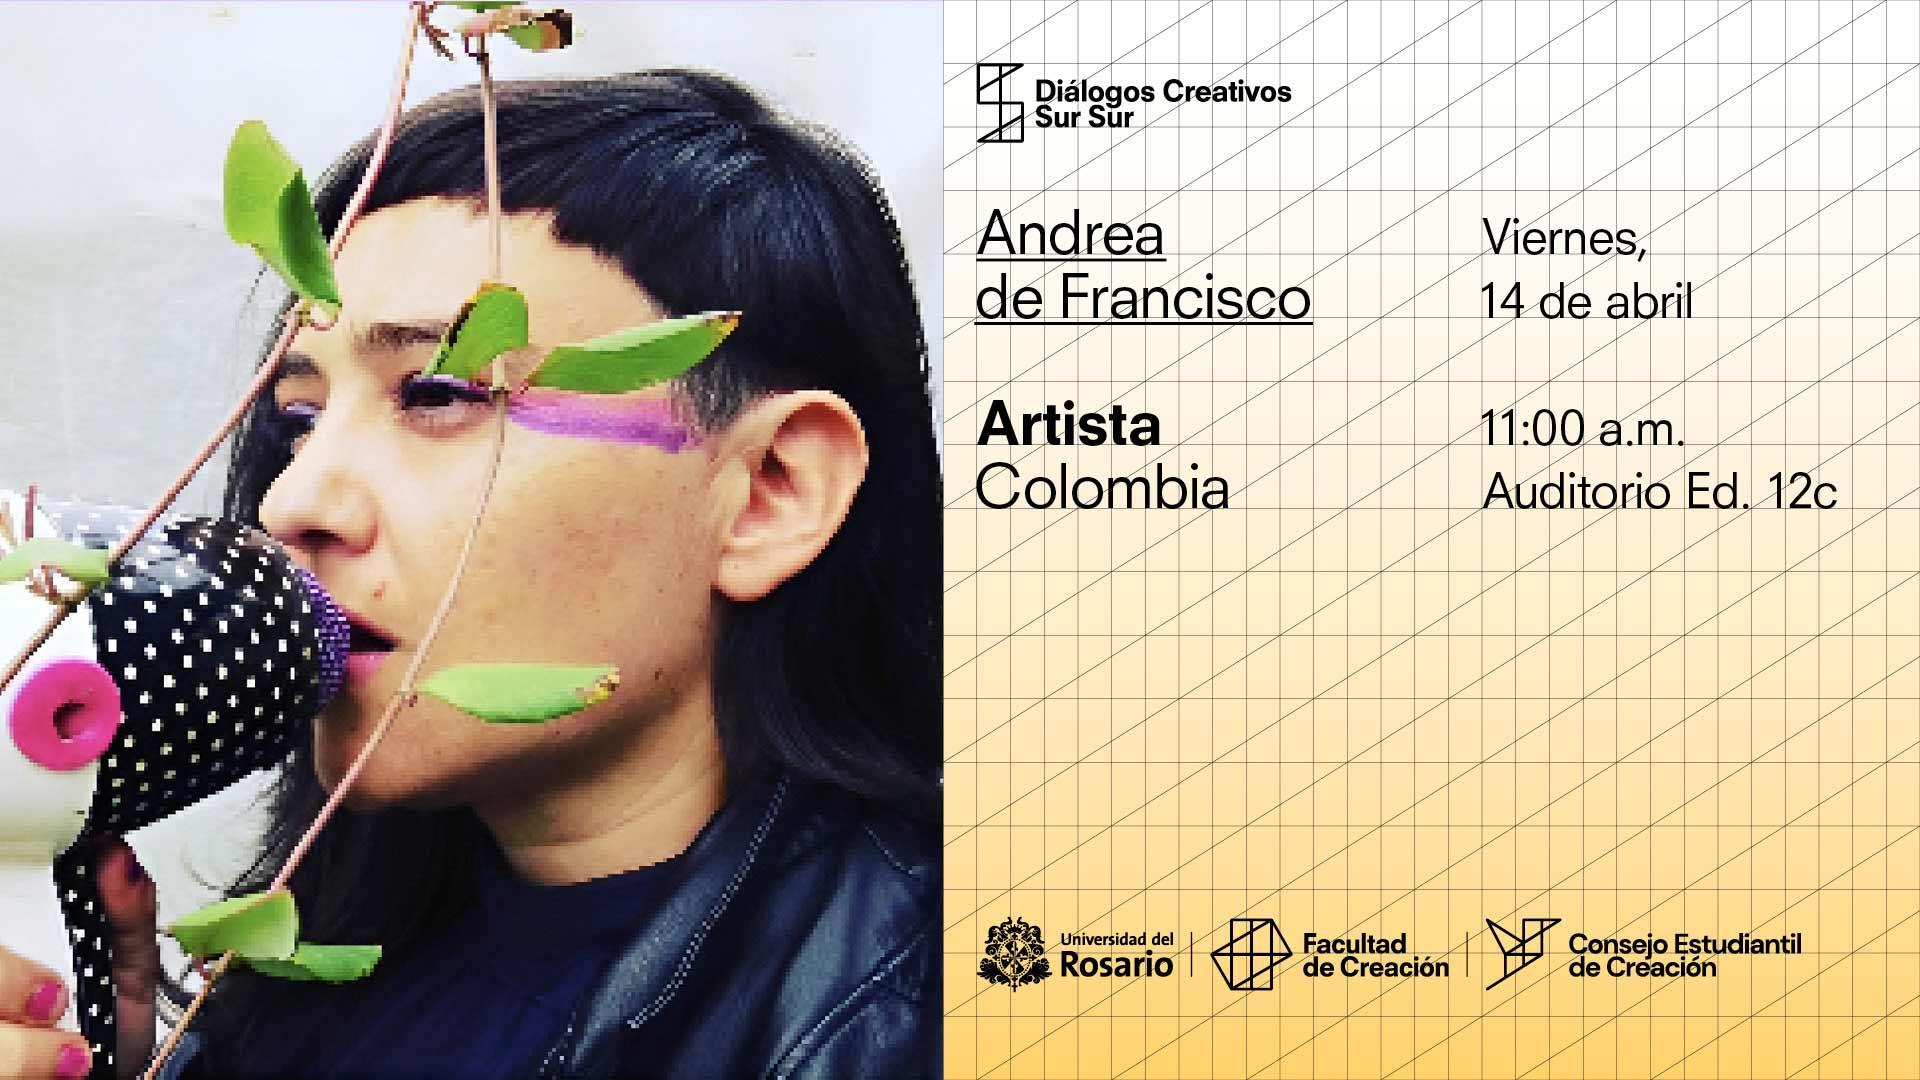 Diálogos Creativos Sur Sur: Andrea de Francisco, Colombia